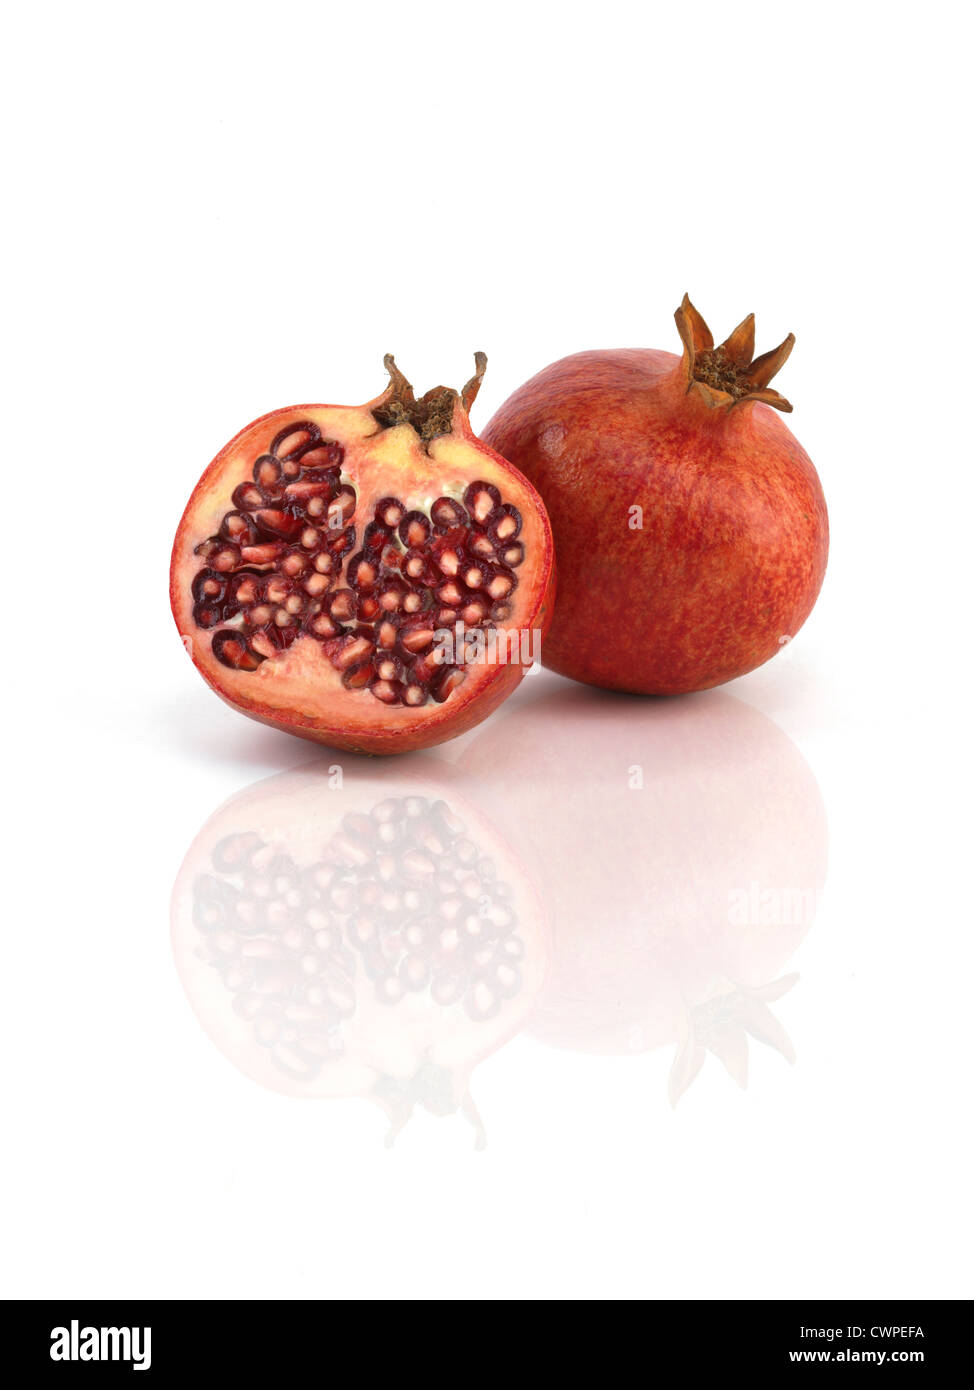 pomegranates on reflective white background Stock Photo